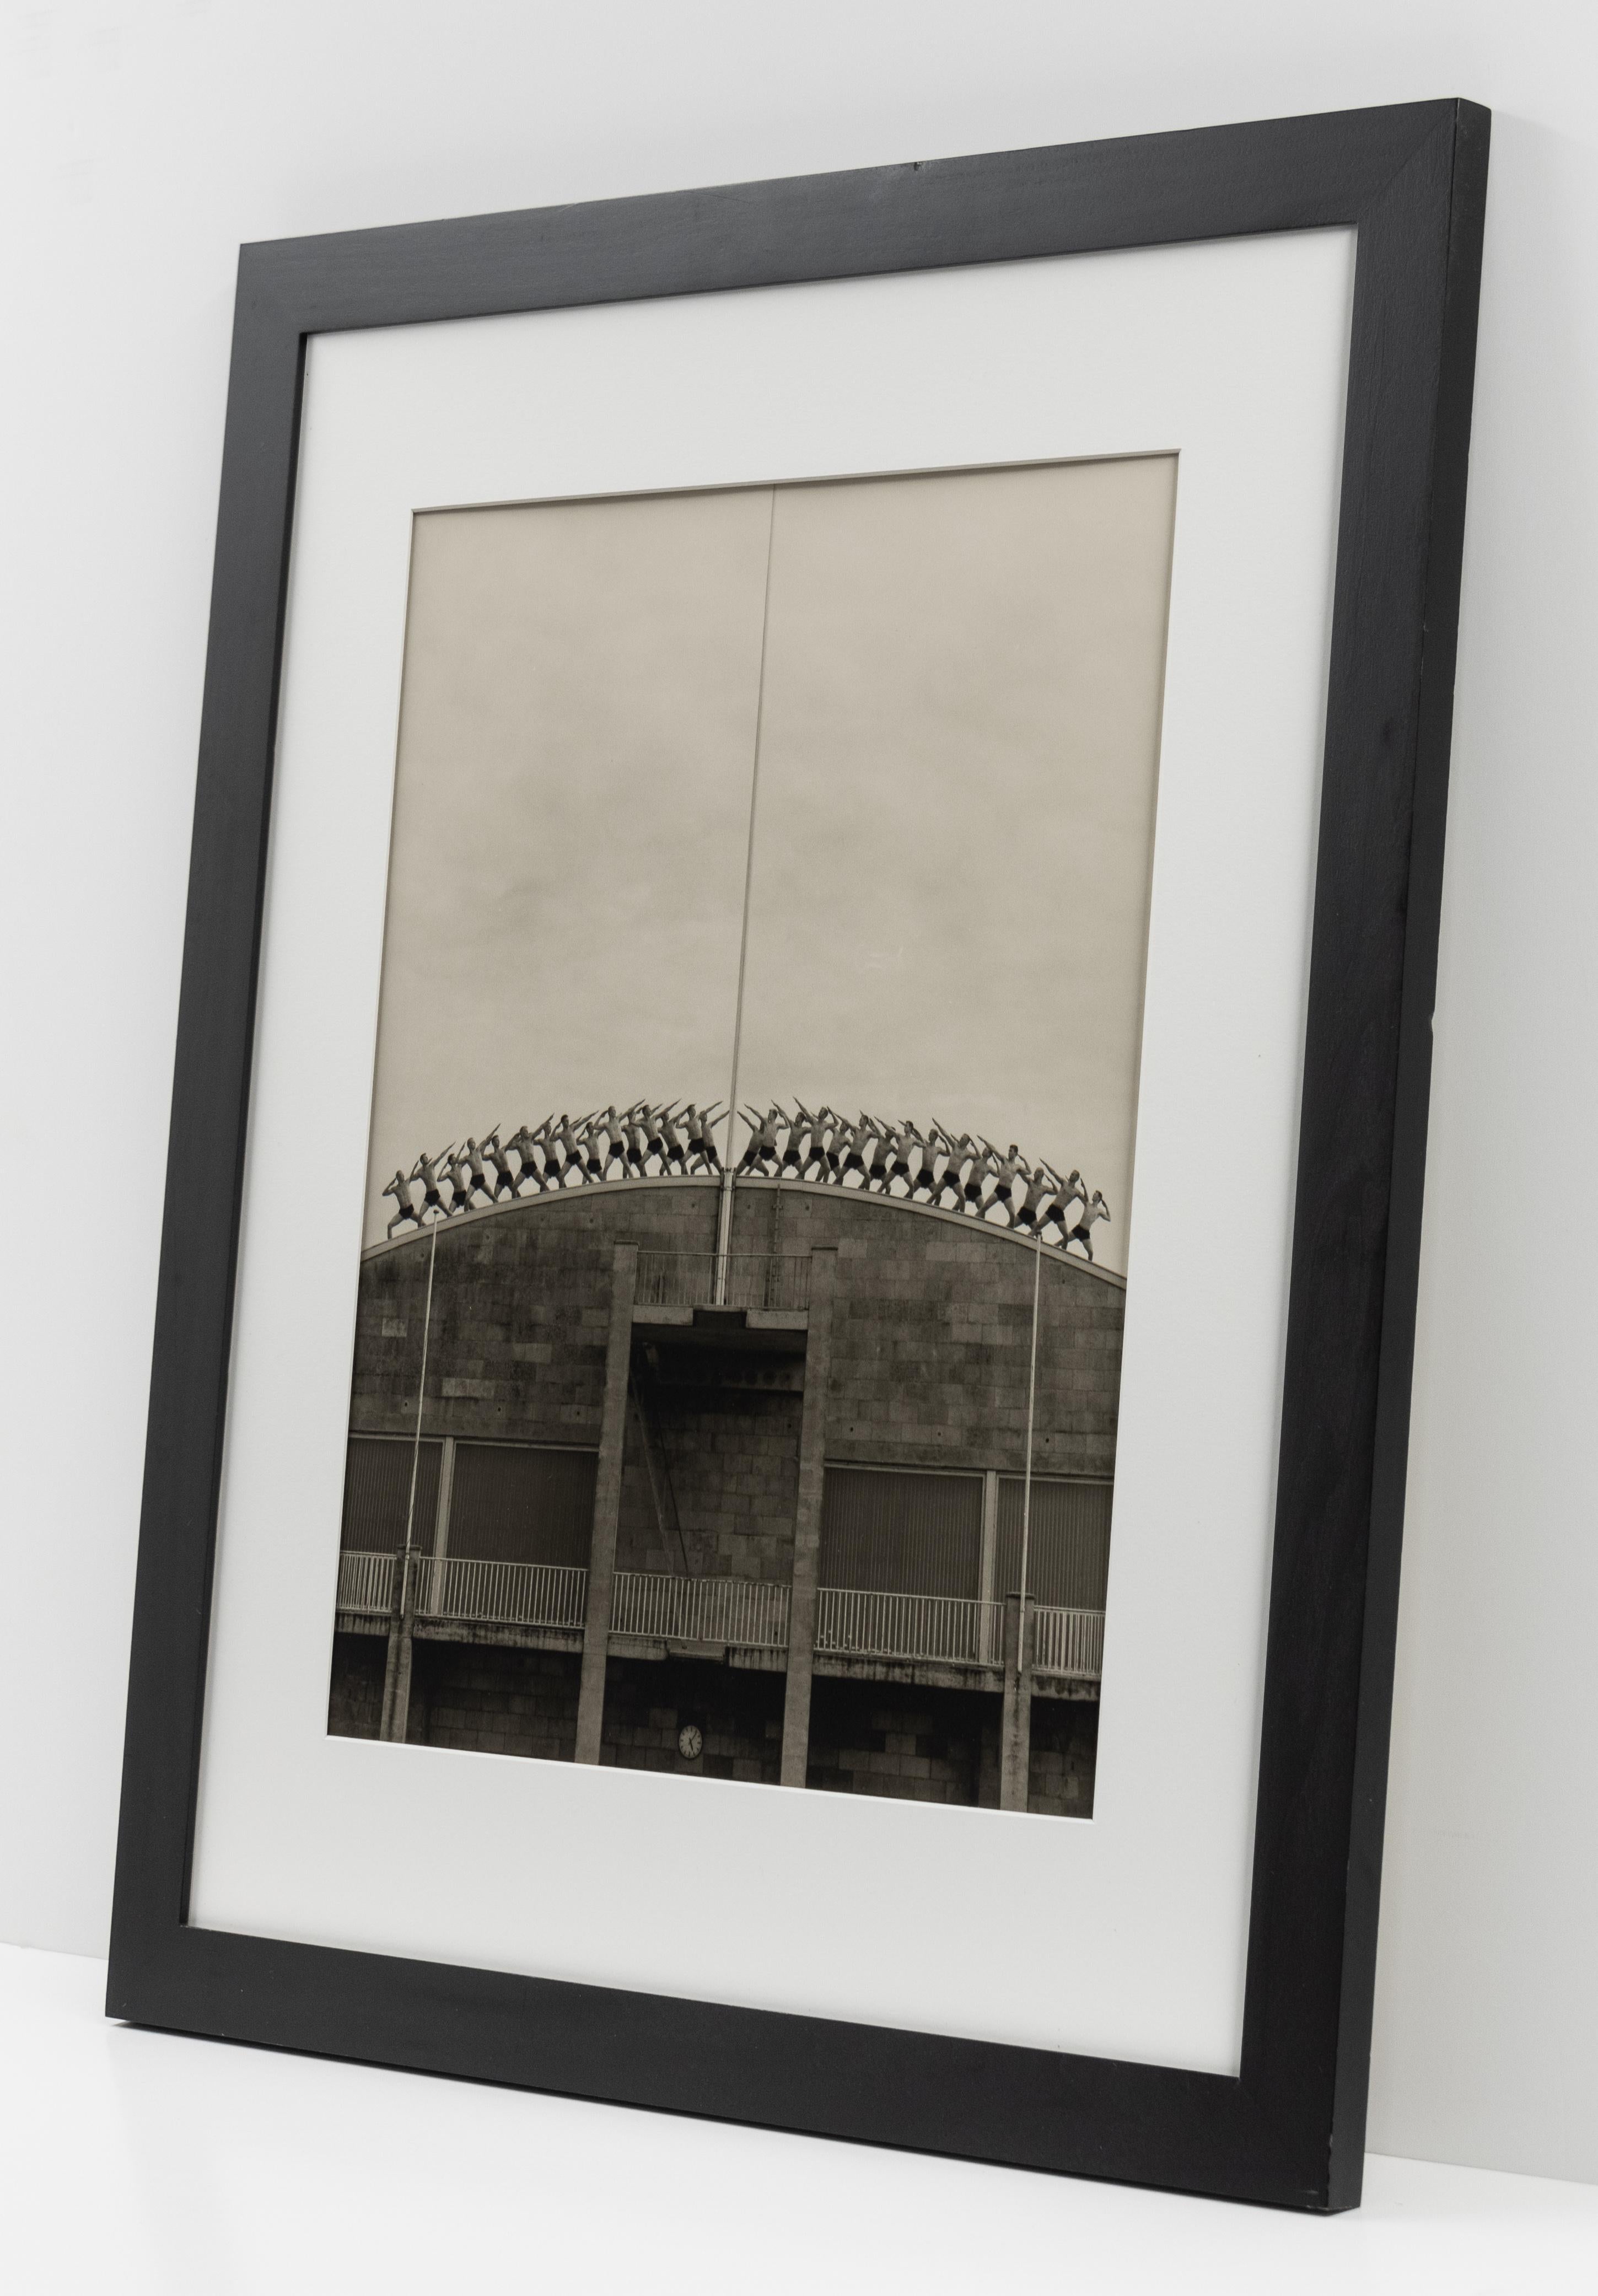 Cette photographie en noir et blanc réalisée par Anderson &New est proposée par CLAMP à New York.

Bisse #2
2000/2001

Signé au crayon, au verso

Épreuve à la gélatine argentique (édition de 25)

20 x 16 pouces (50,8 x 40,6 cm), feuille

